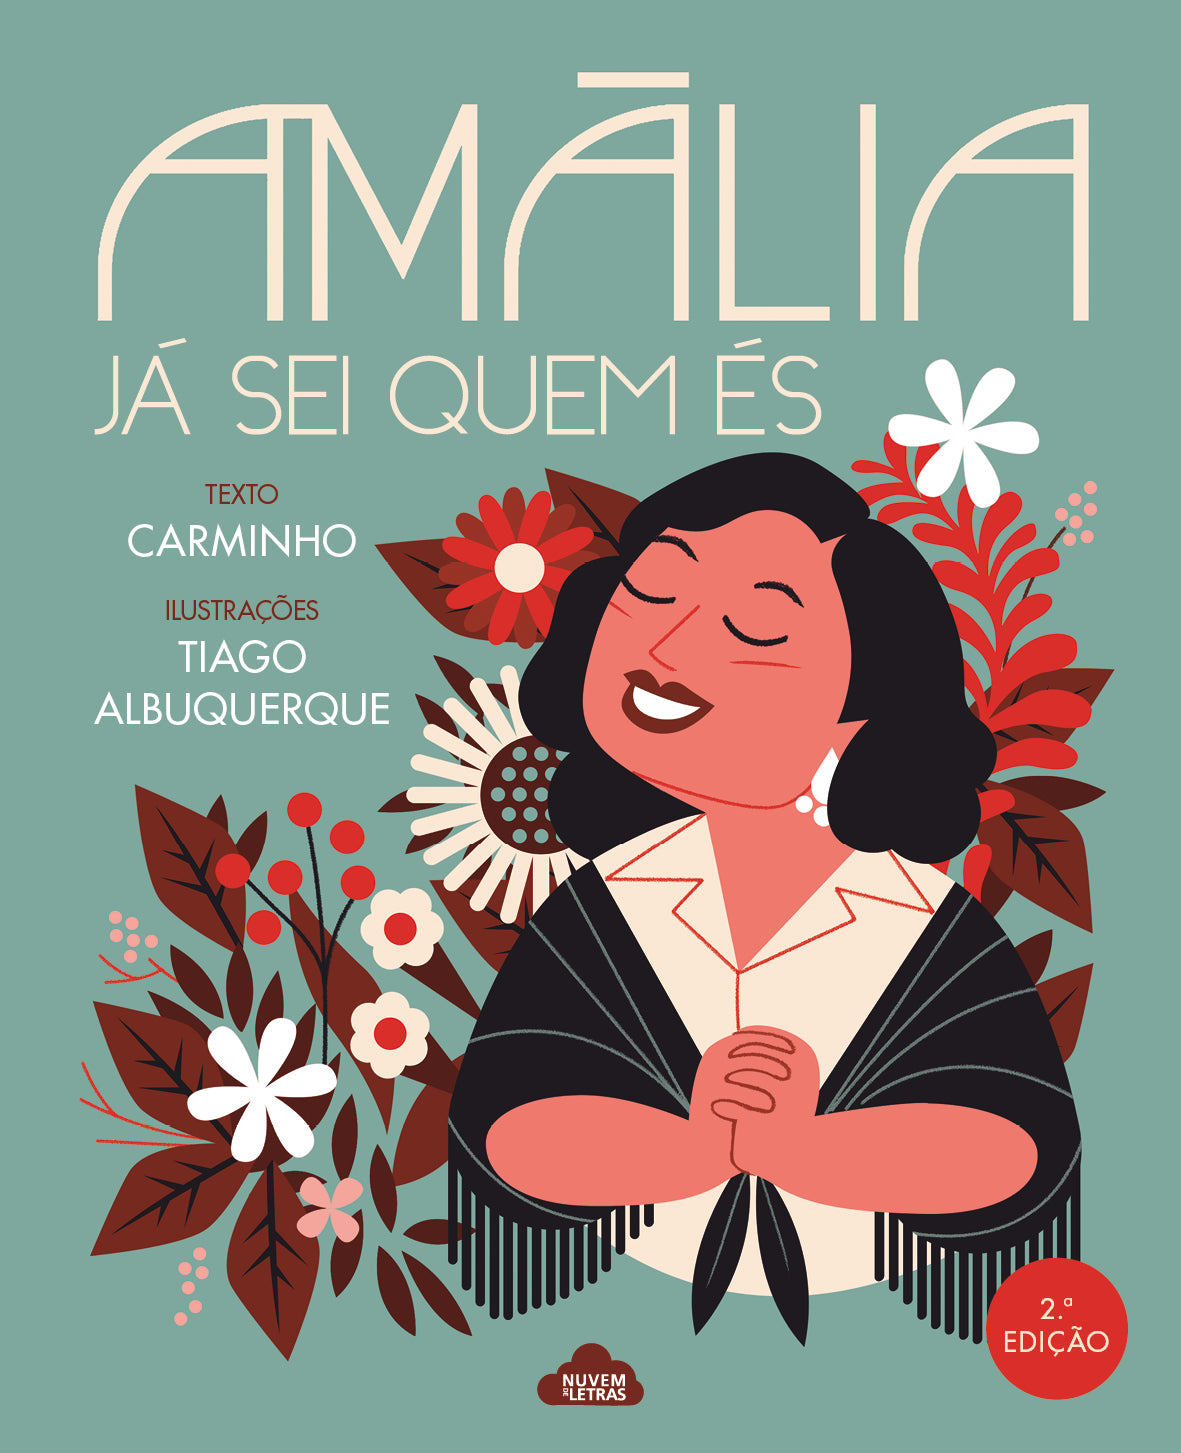 Book "Amália, Já Sei Quem És"